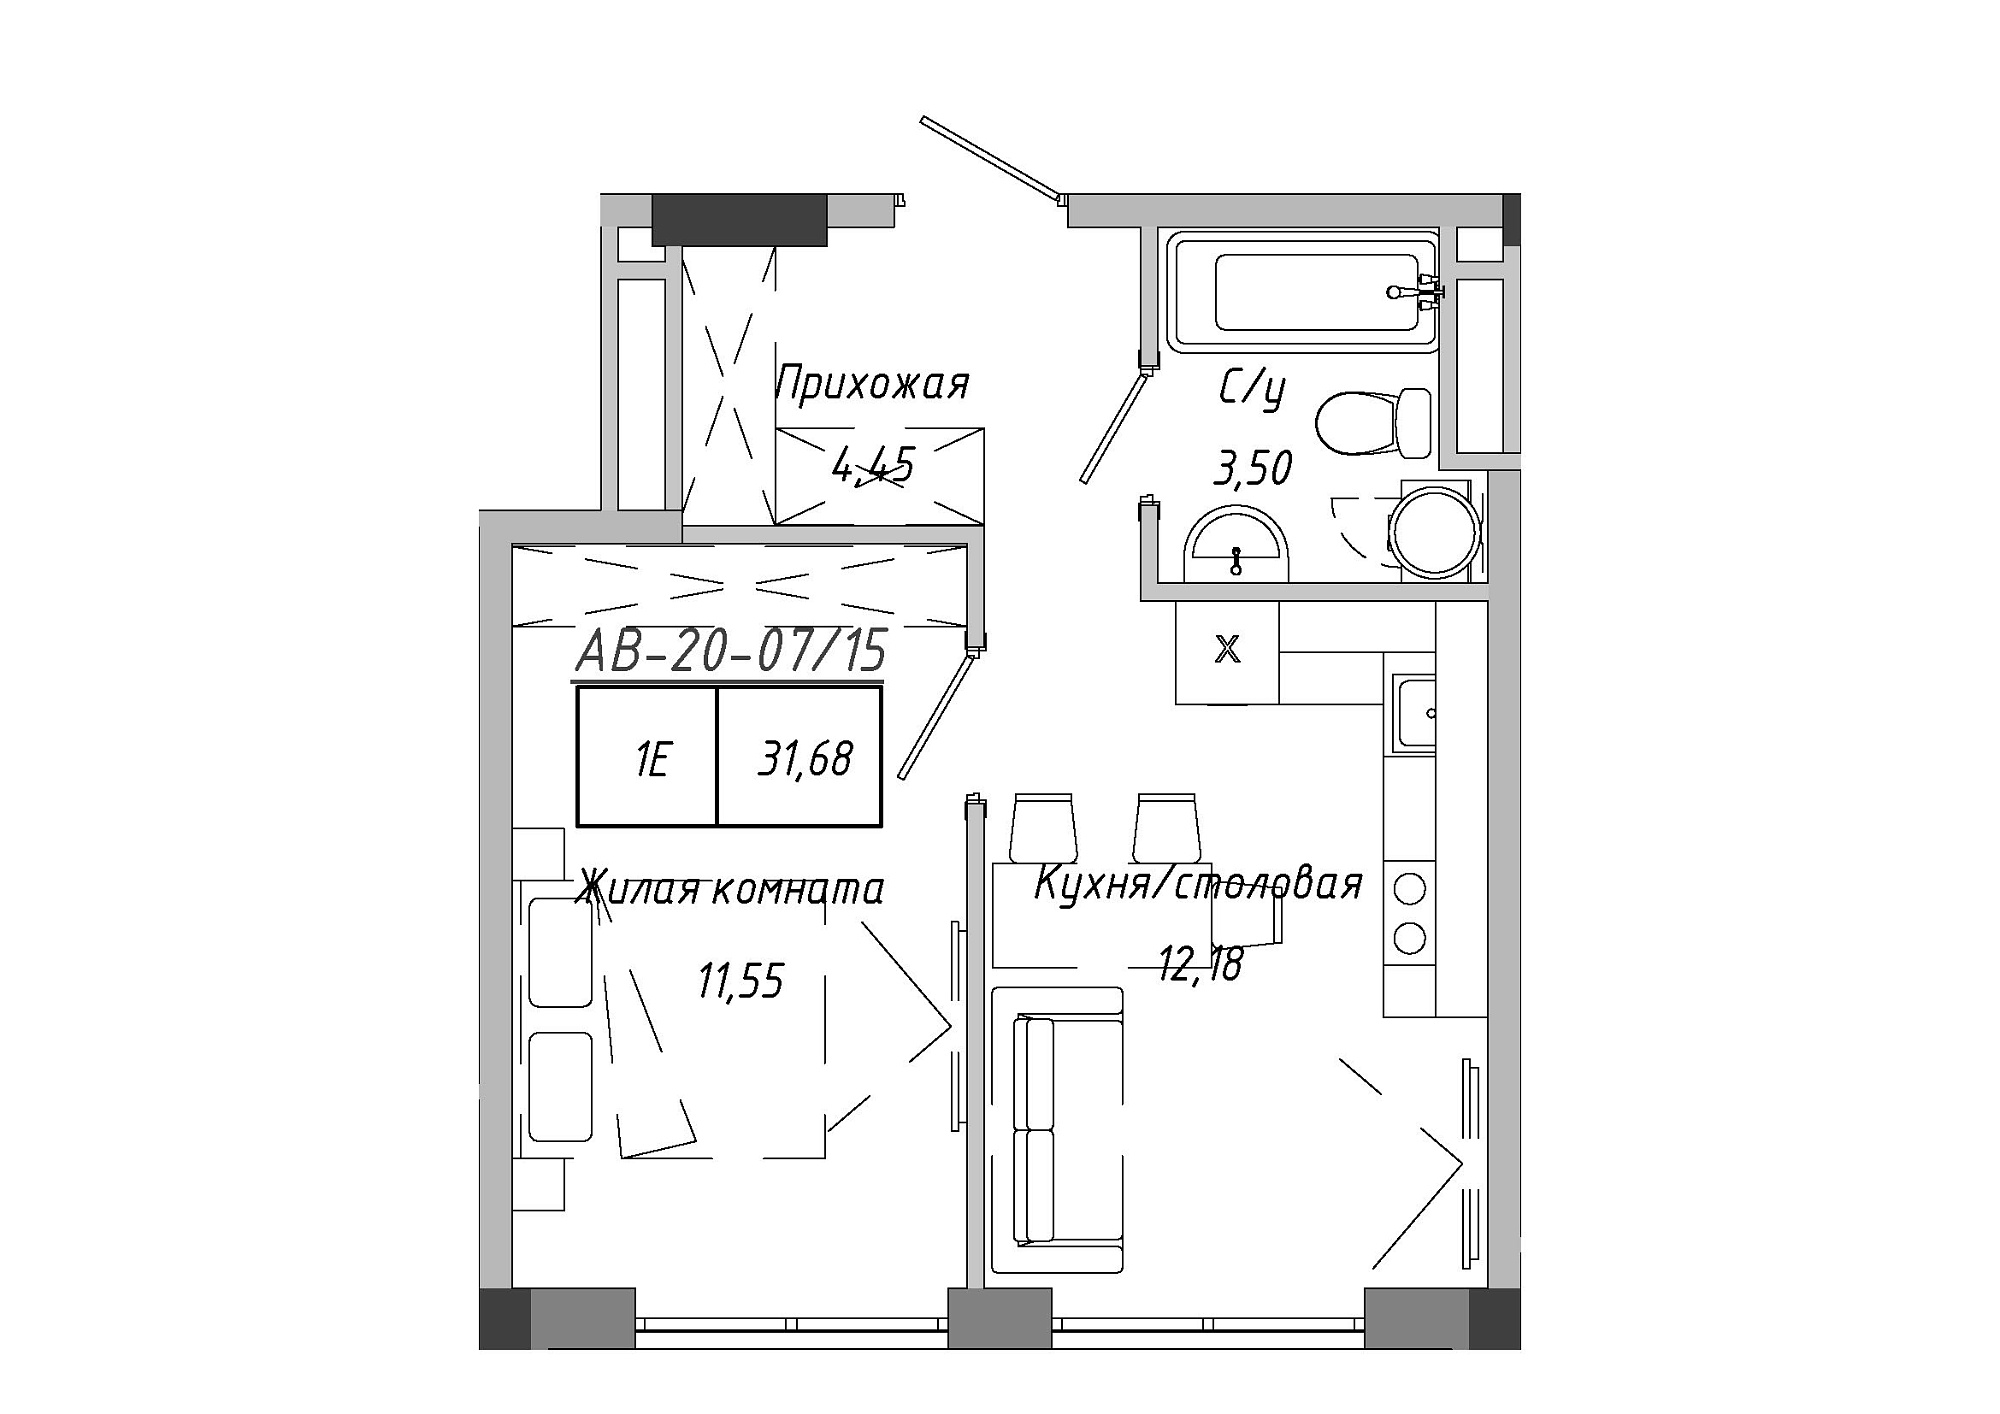 Планування 1-к квартира площею 31.51м2, AB-20-07/00015.